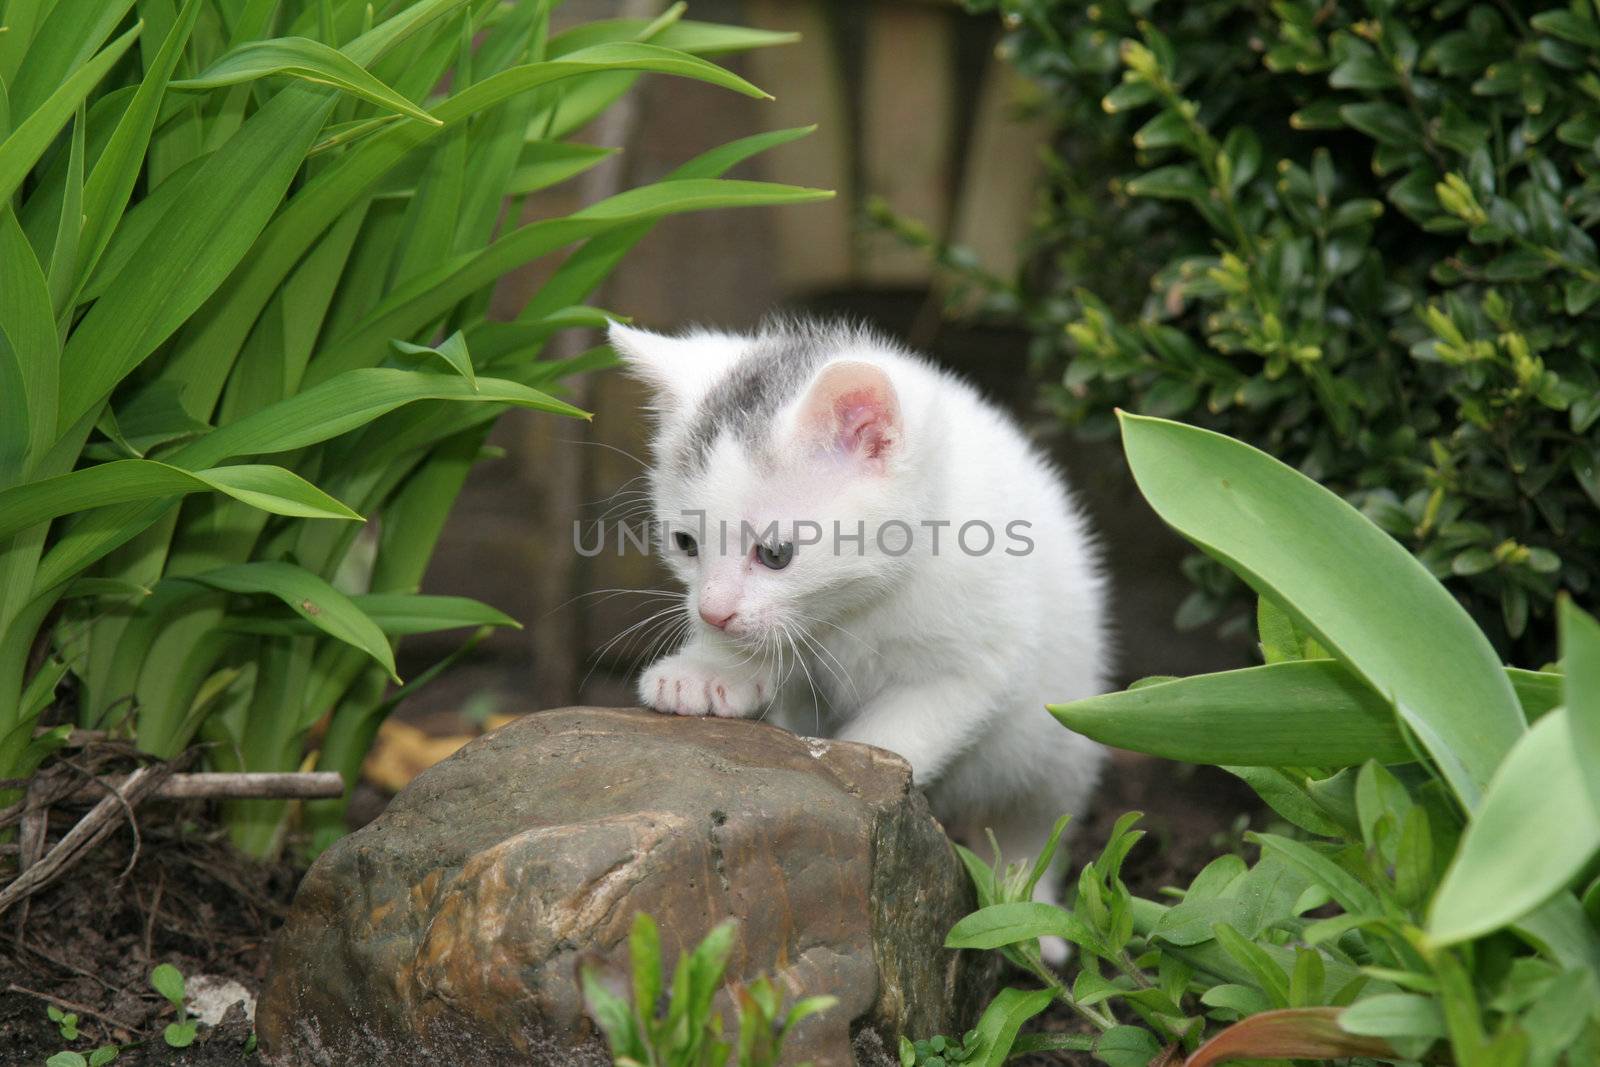 Little kitten lookin around the garden